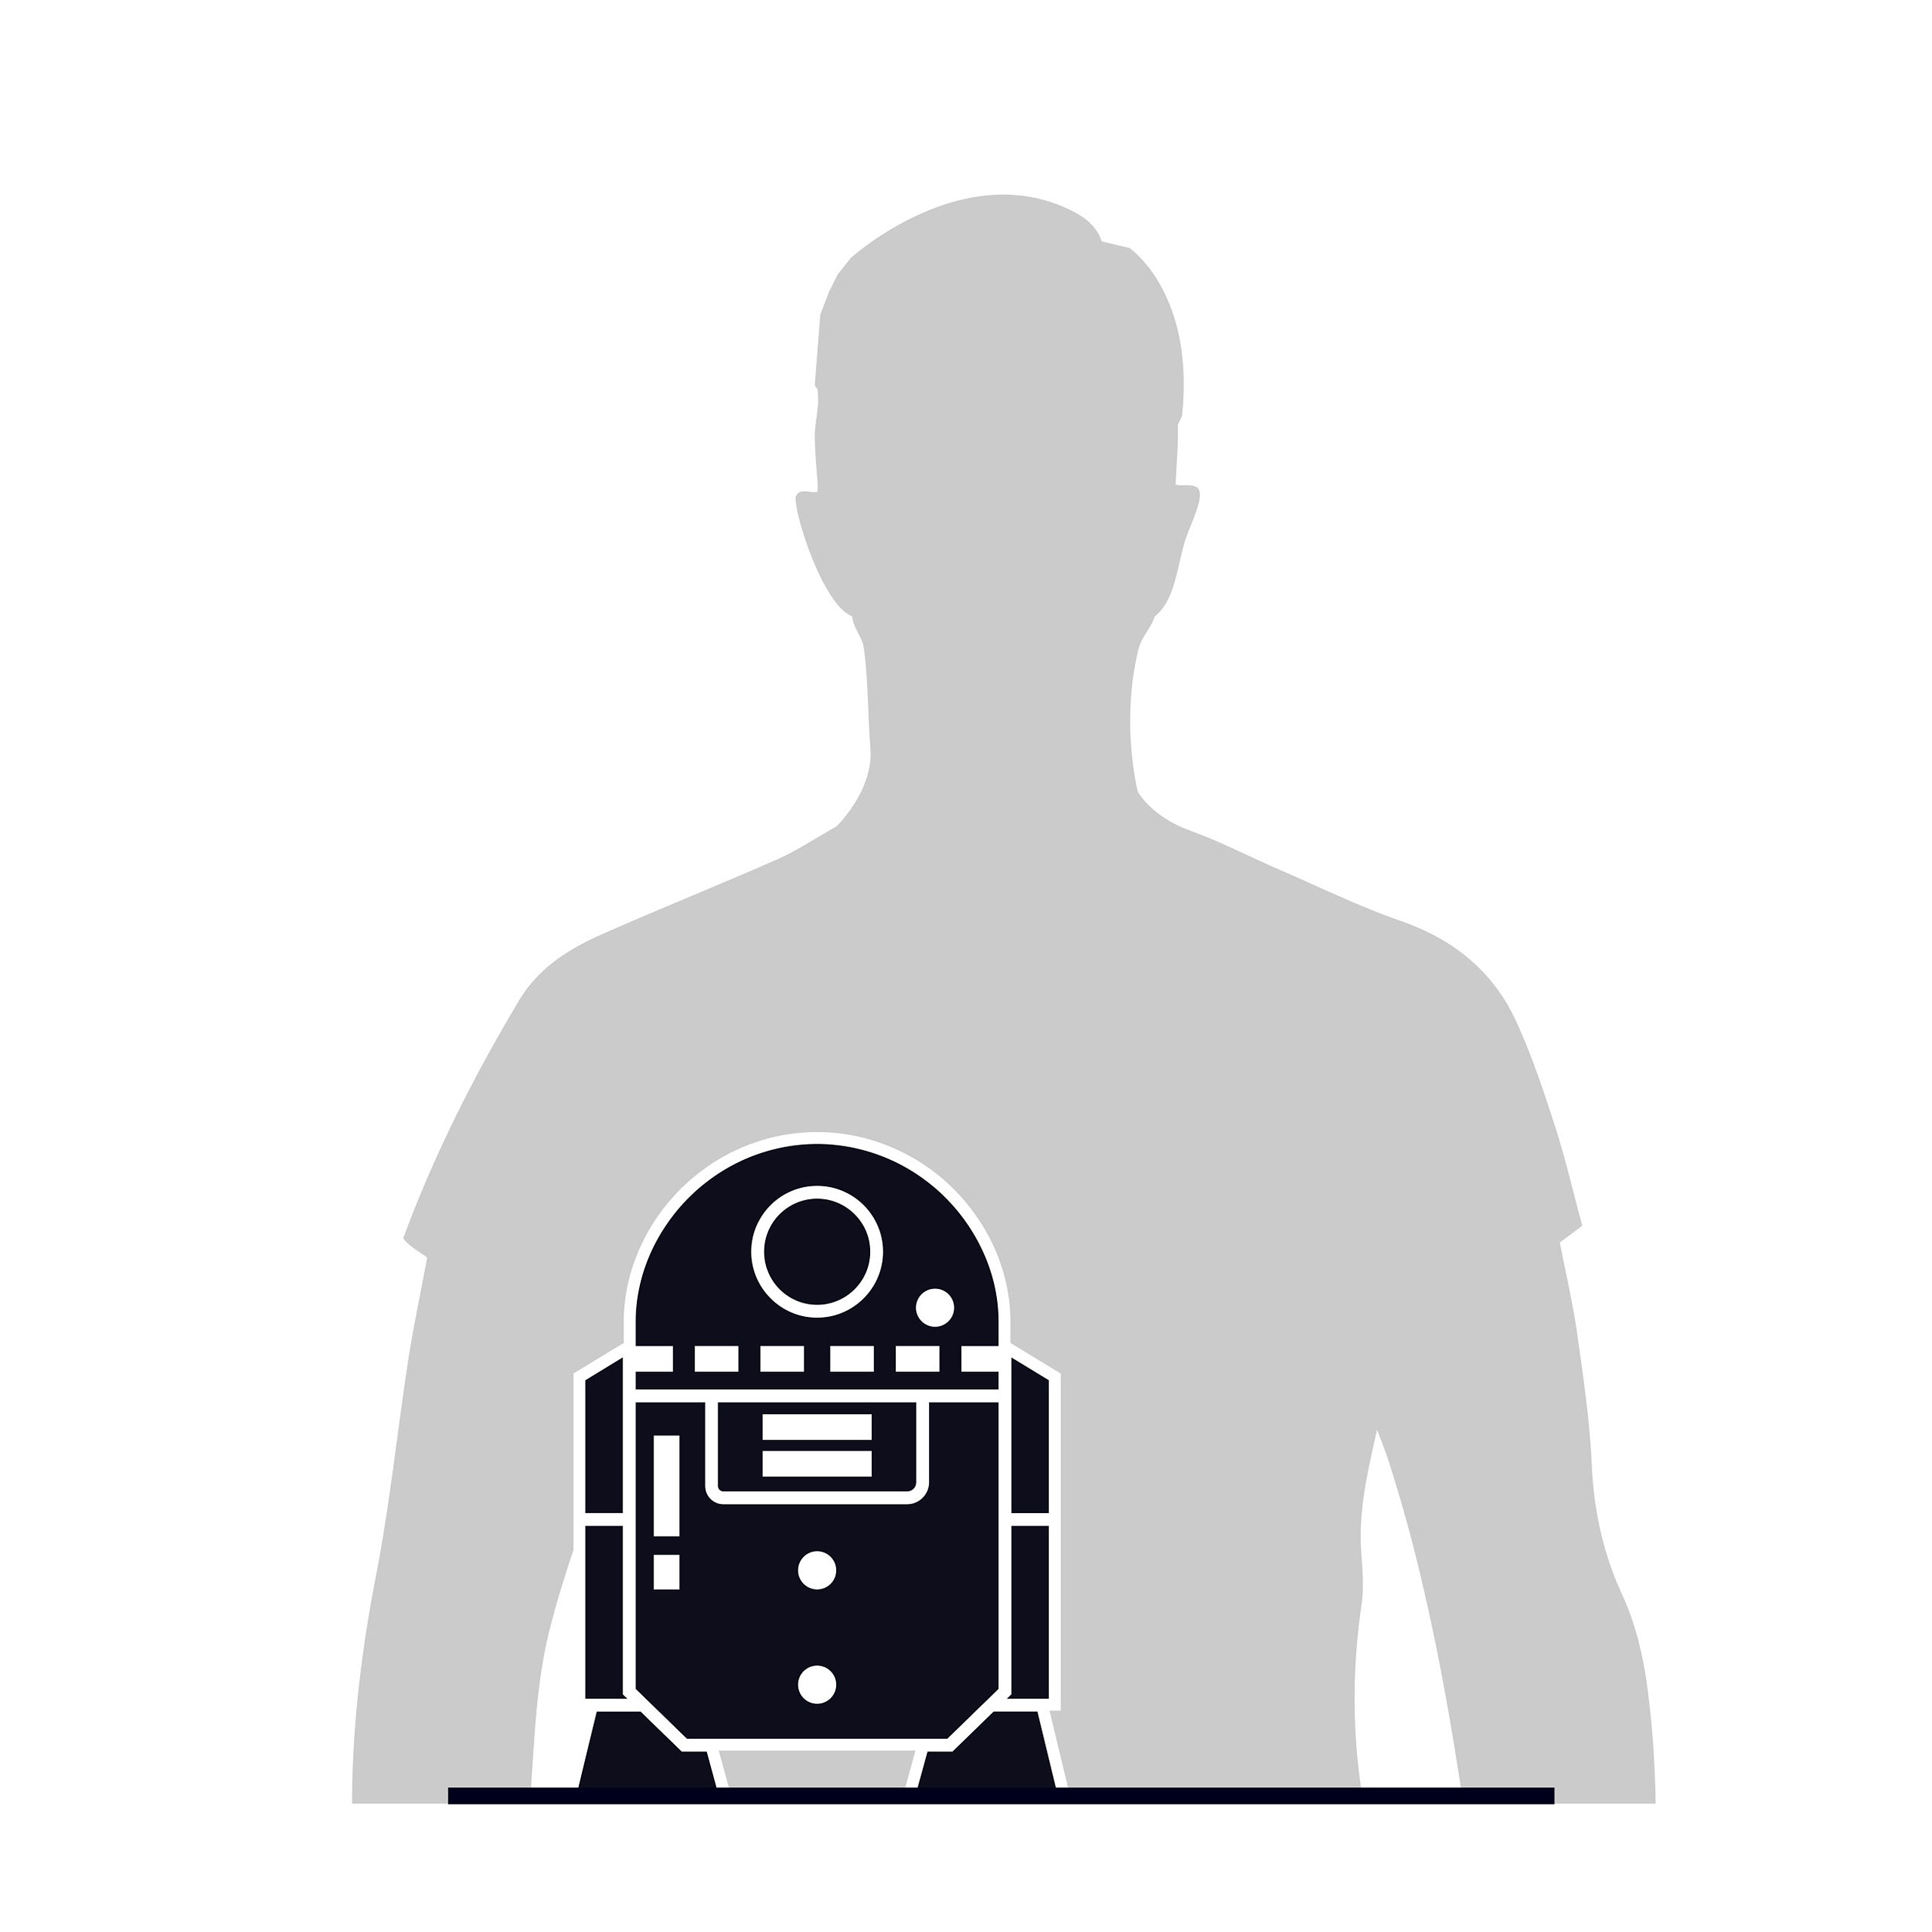 R2-D2 4D Bouwmodel Kit - Star Wars